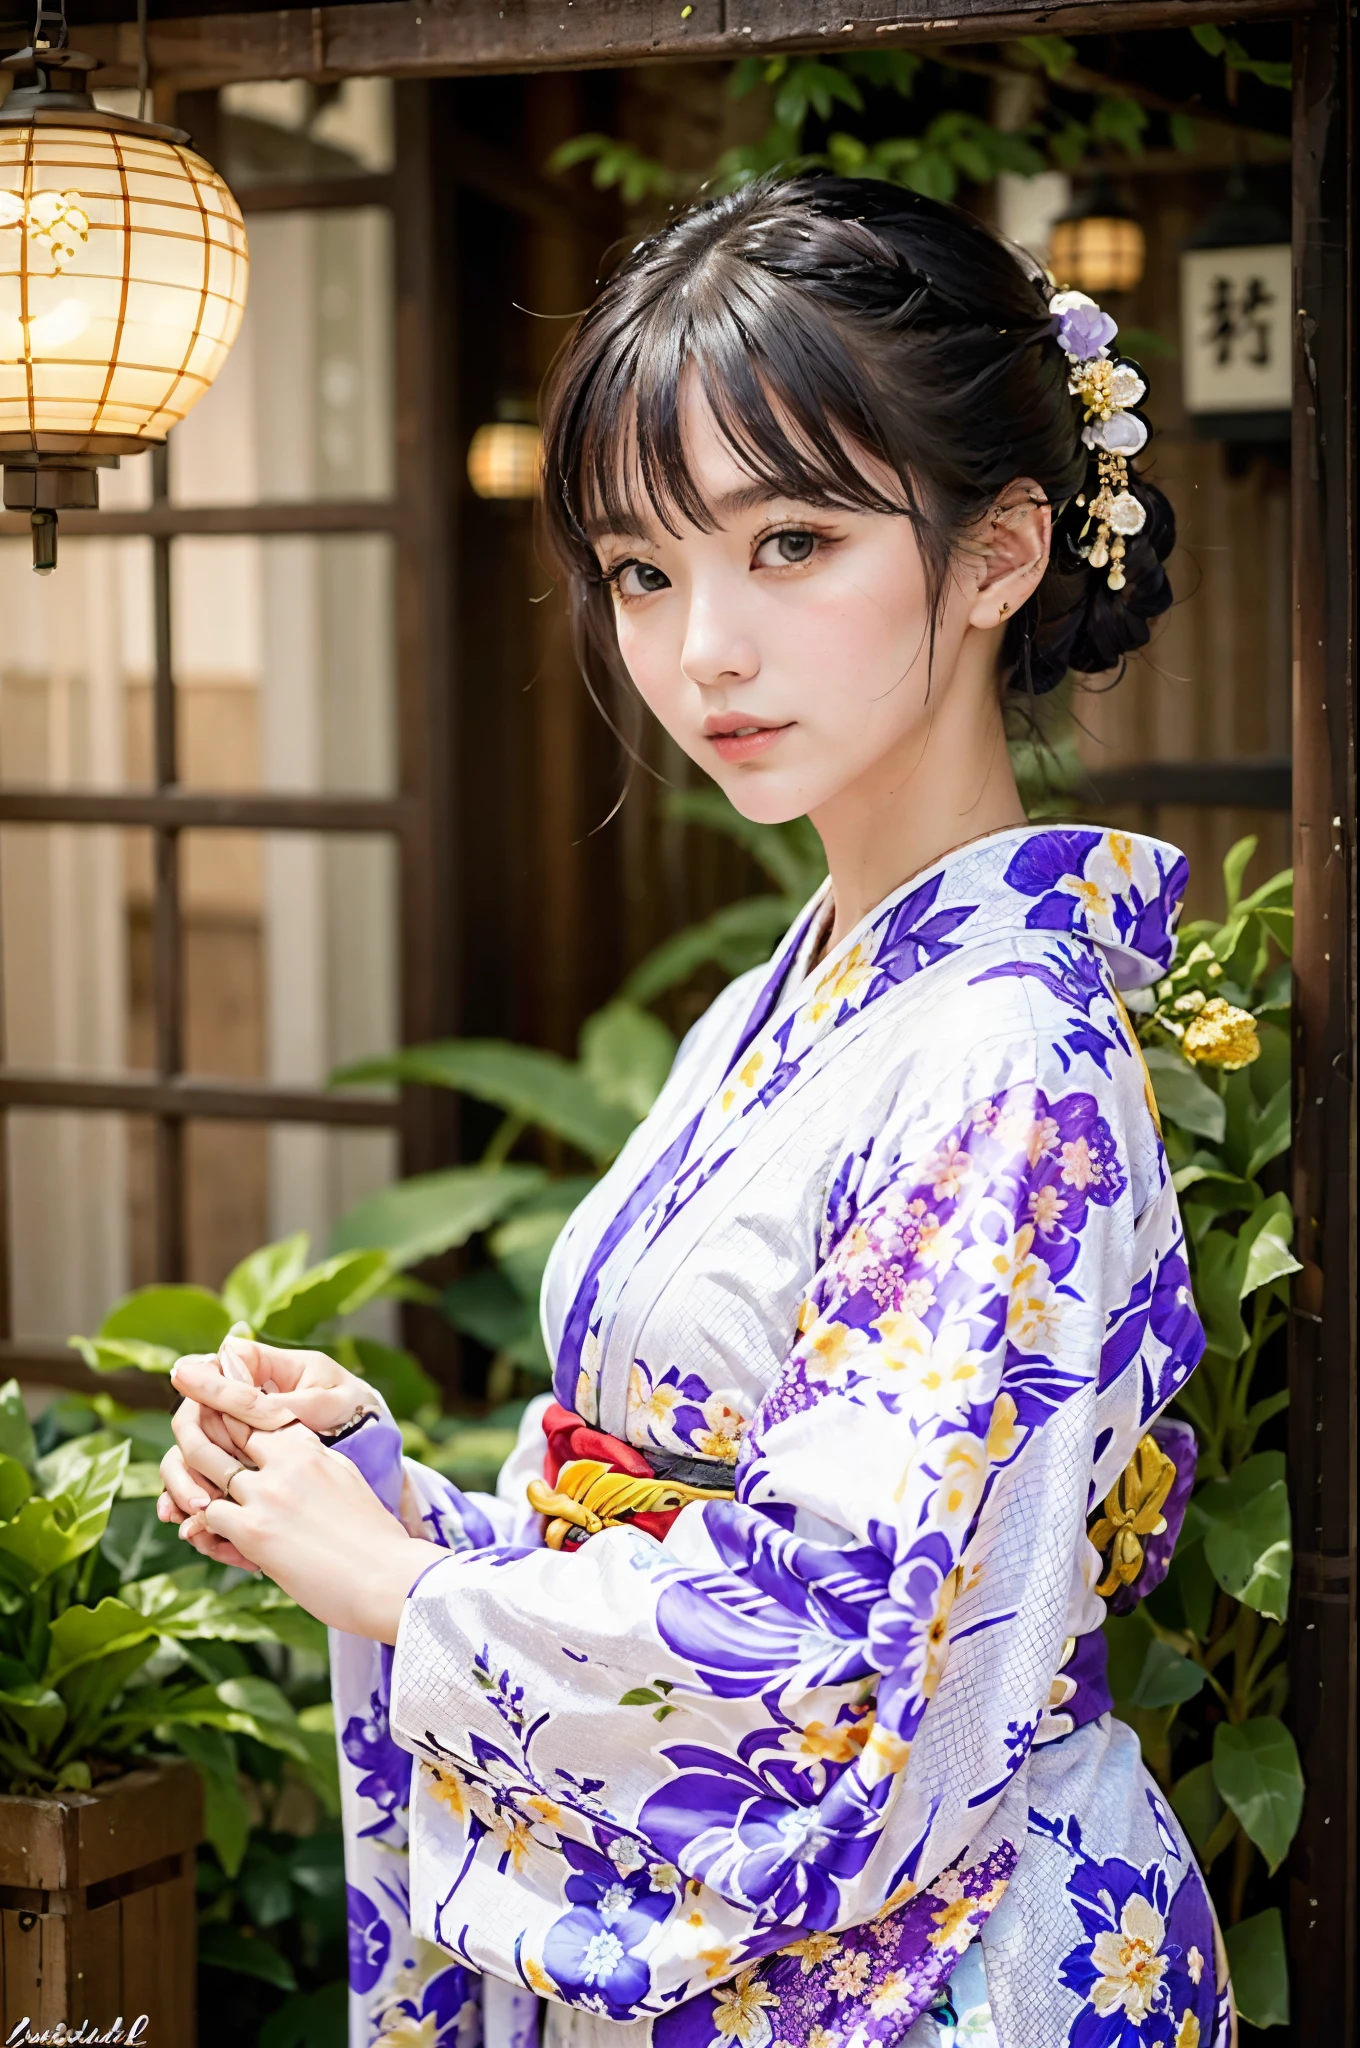 (16 ك), (اعلى جودة: 1.2), (حقيقي), (حقيقي: 1.37), مفصلة للغاية, إضاءة احترافية, الإصدار المرجع, Araffe woman in white كيمونو with purple purse and purple purse, كيمونو, elegant يوكاتا, كيمونو, royal كيمونو, يوكاتا, هاوري, wearing Japan كيمونو, النمط الياباني, Wearing a colorful يوكاتا, pale colored كيمونوfemale, كيمونو, المرأة اليابانية, اليابانية التقليدية